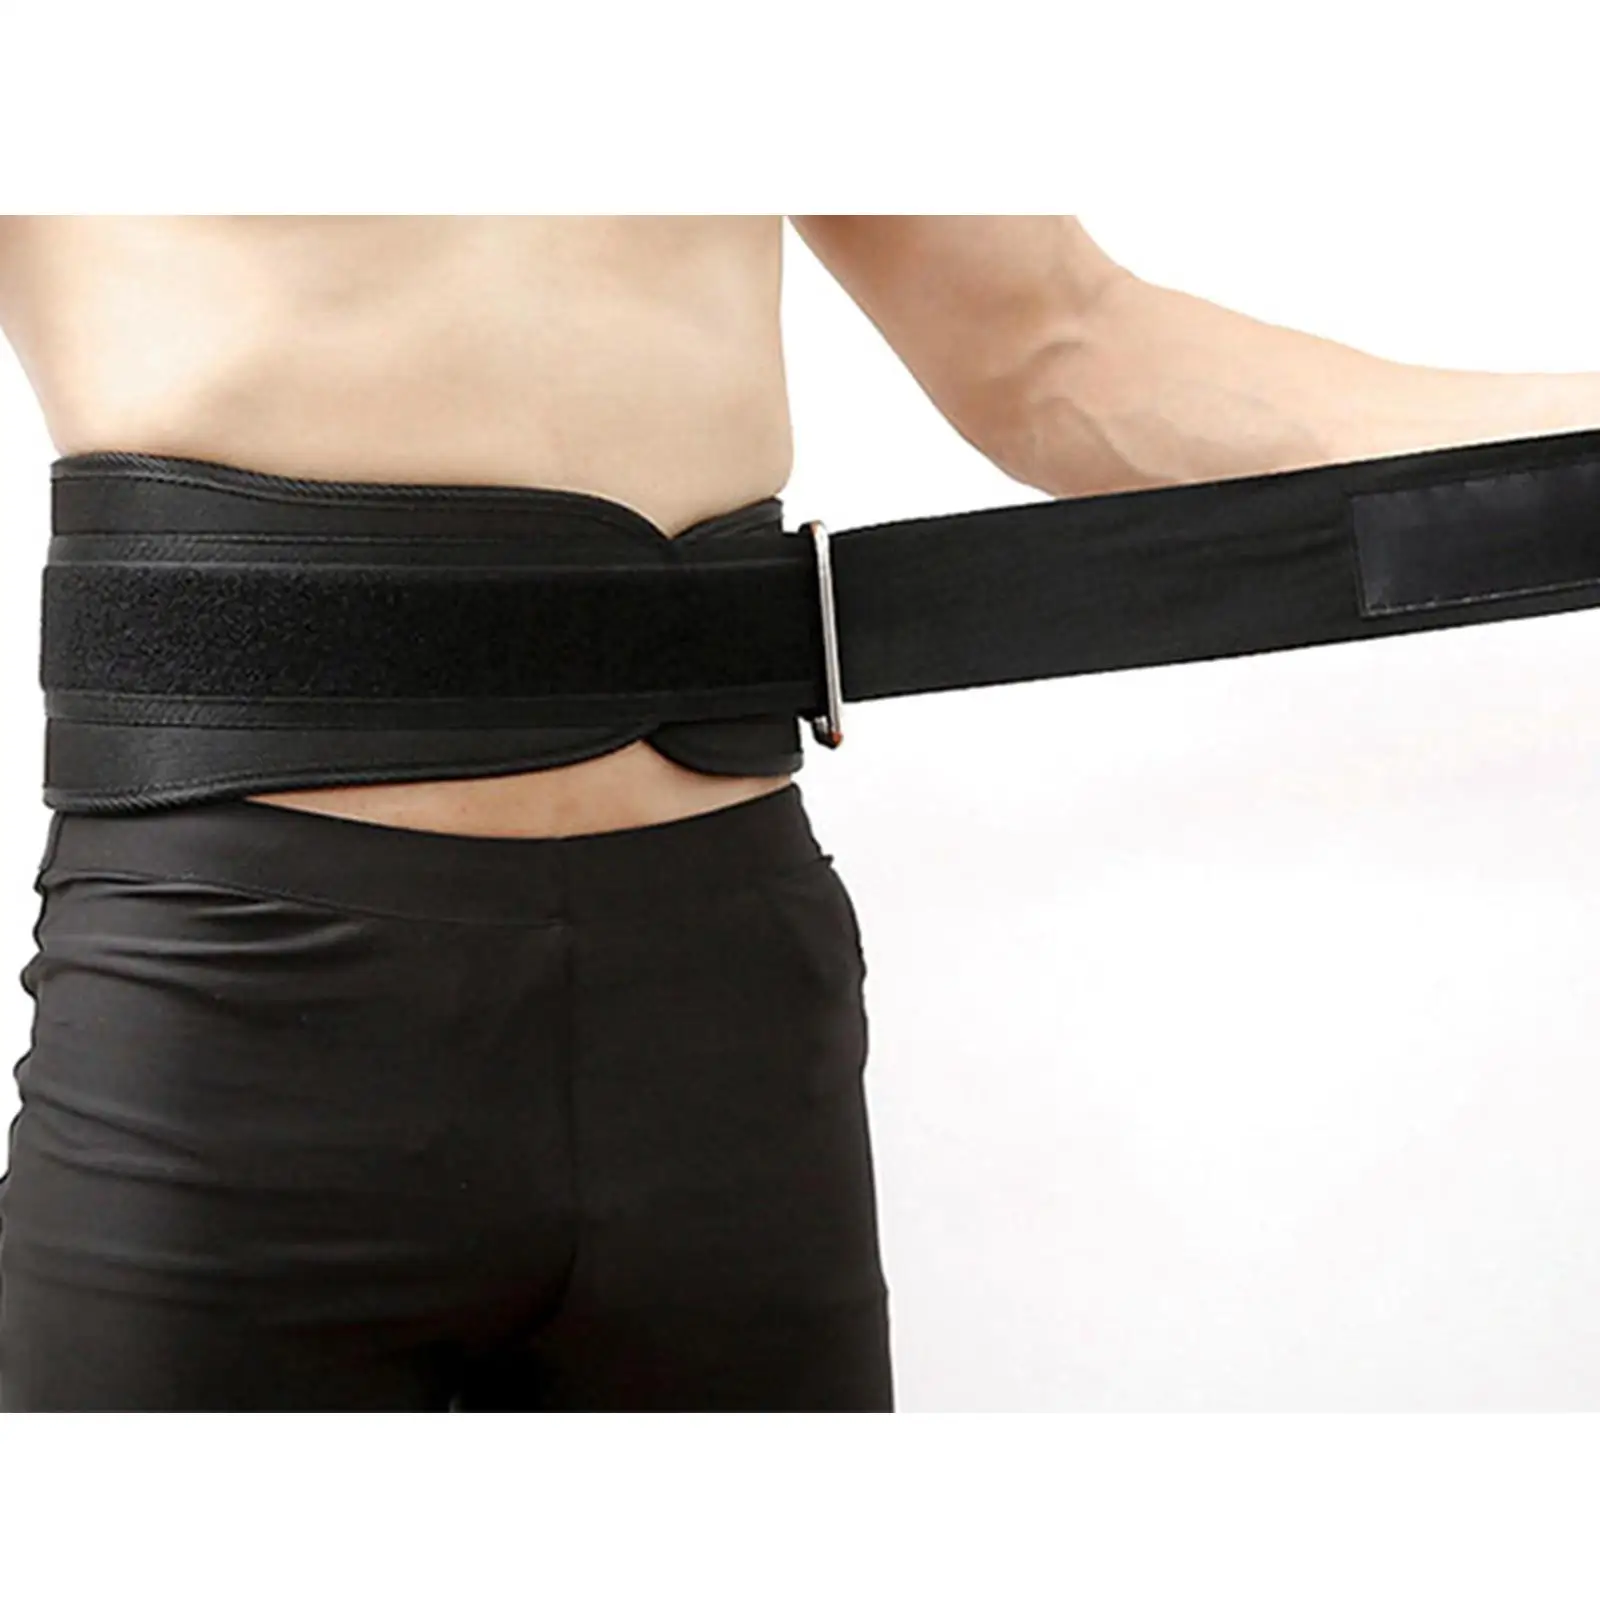 Weight Lifting Belt Waist Brace Waistband Fitness Abdominal Protector Lumbar Support for Deep Squat Body Building Powerlifting